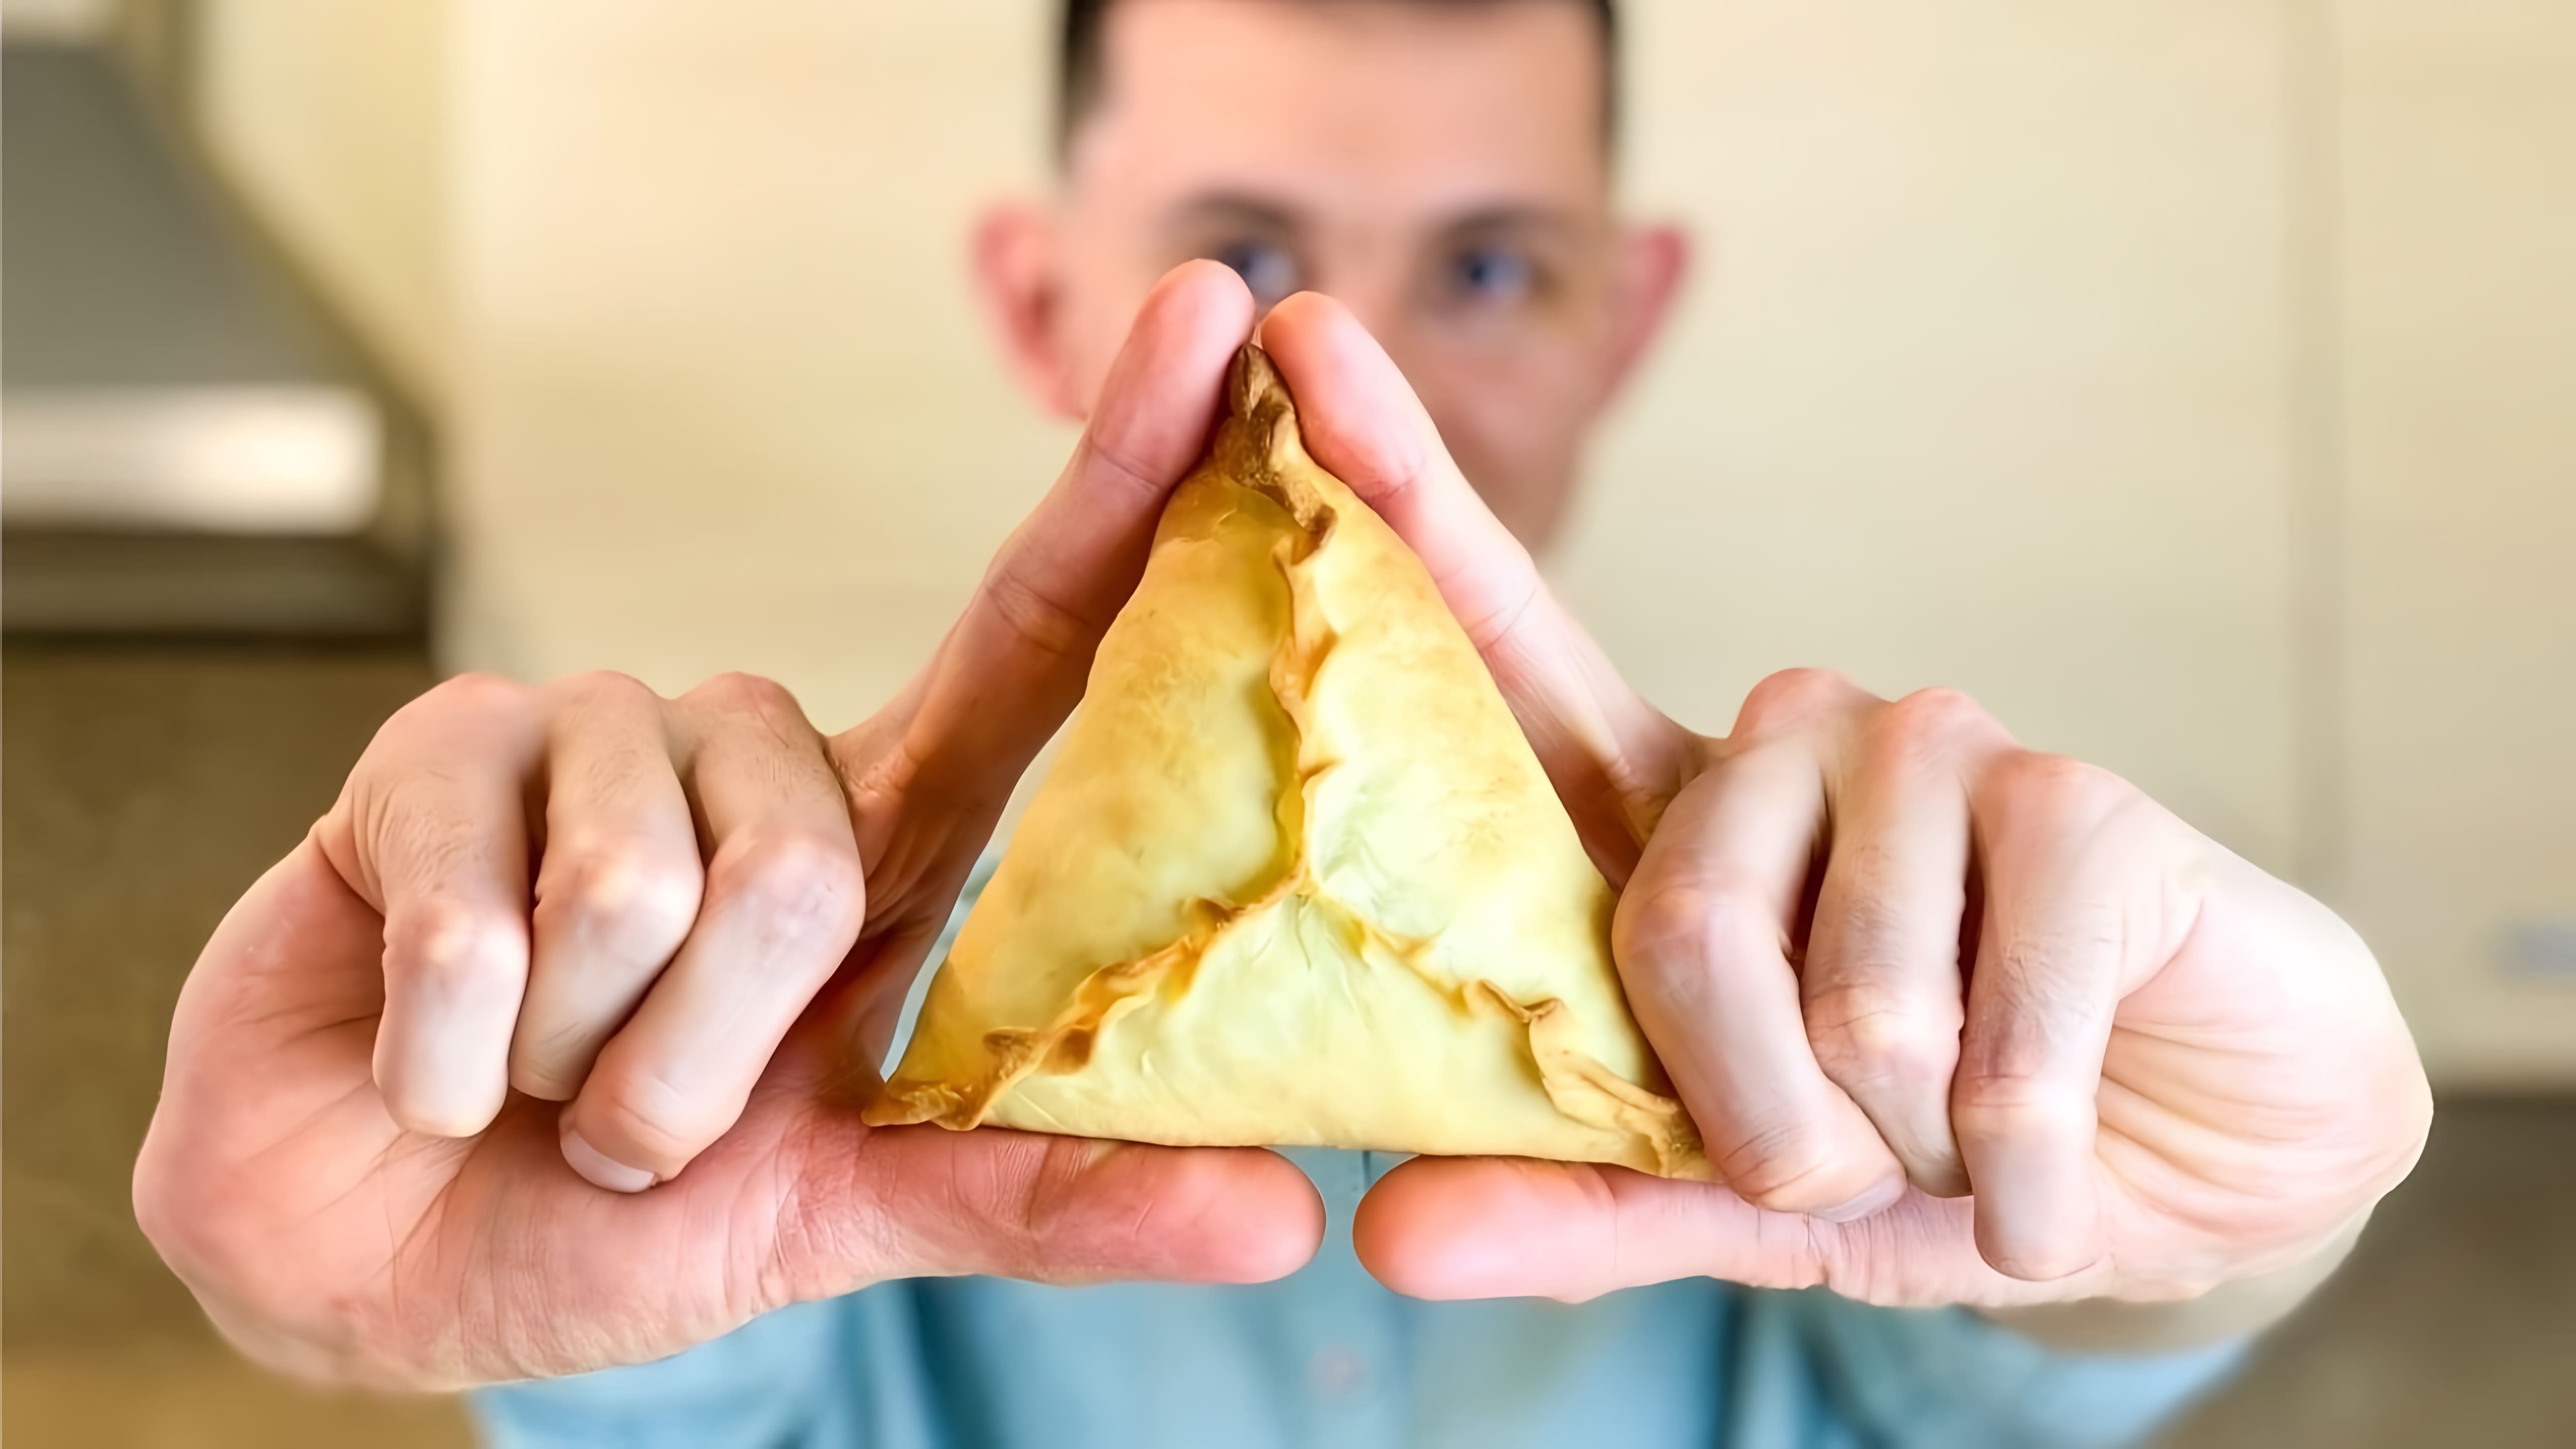 В этом видео демонстрируется процесс приготовления татарского блюда - треугольников, или эчпочмак